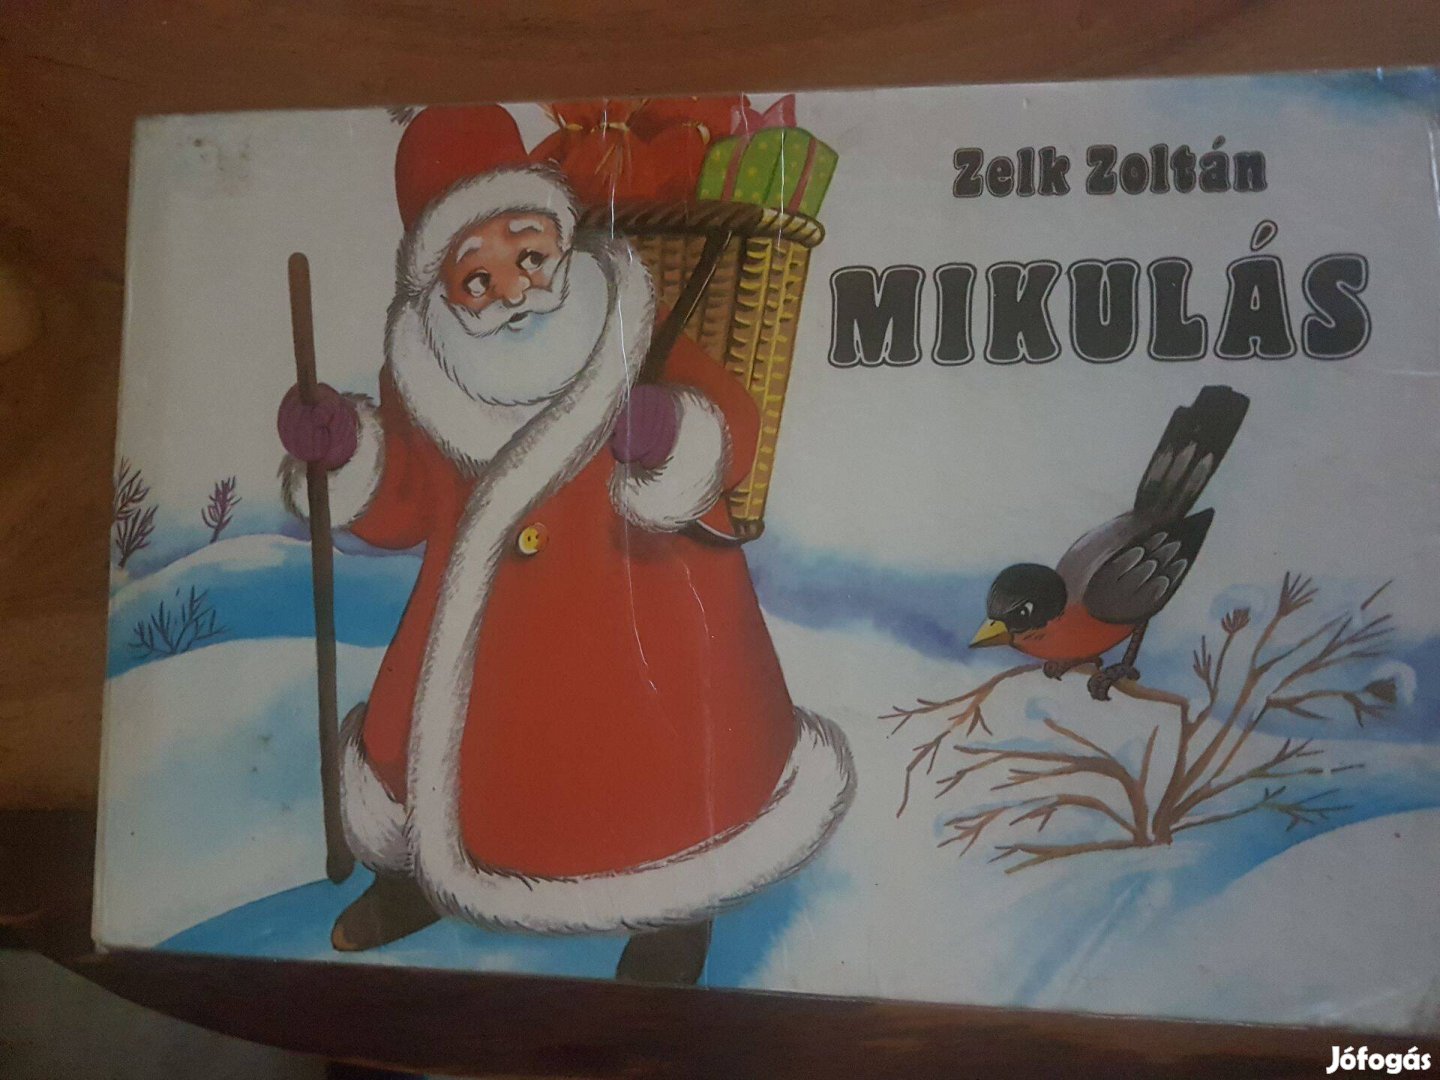 Zelk Zoltán Mikulás